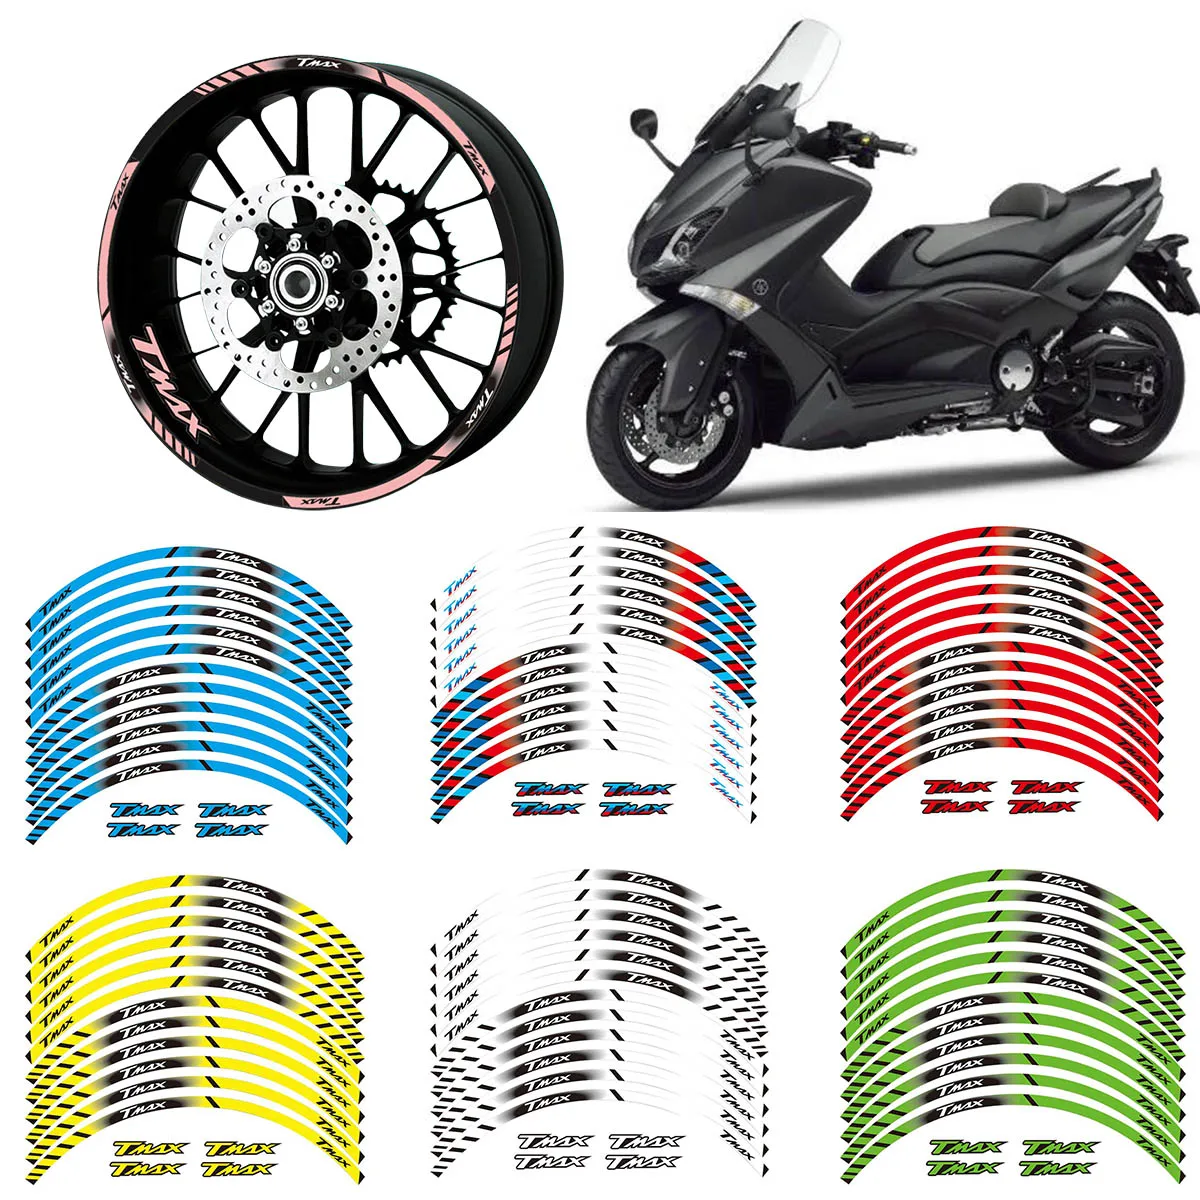 

12 X Bordo Spesso Esterno 15'' Rim Banda Wheel Stickers For YAMAHA TMAX 500 530 TMAX500 TMAX530